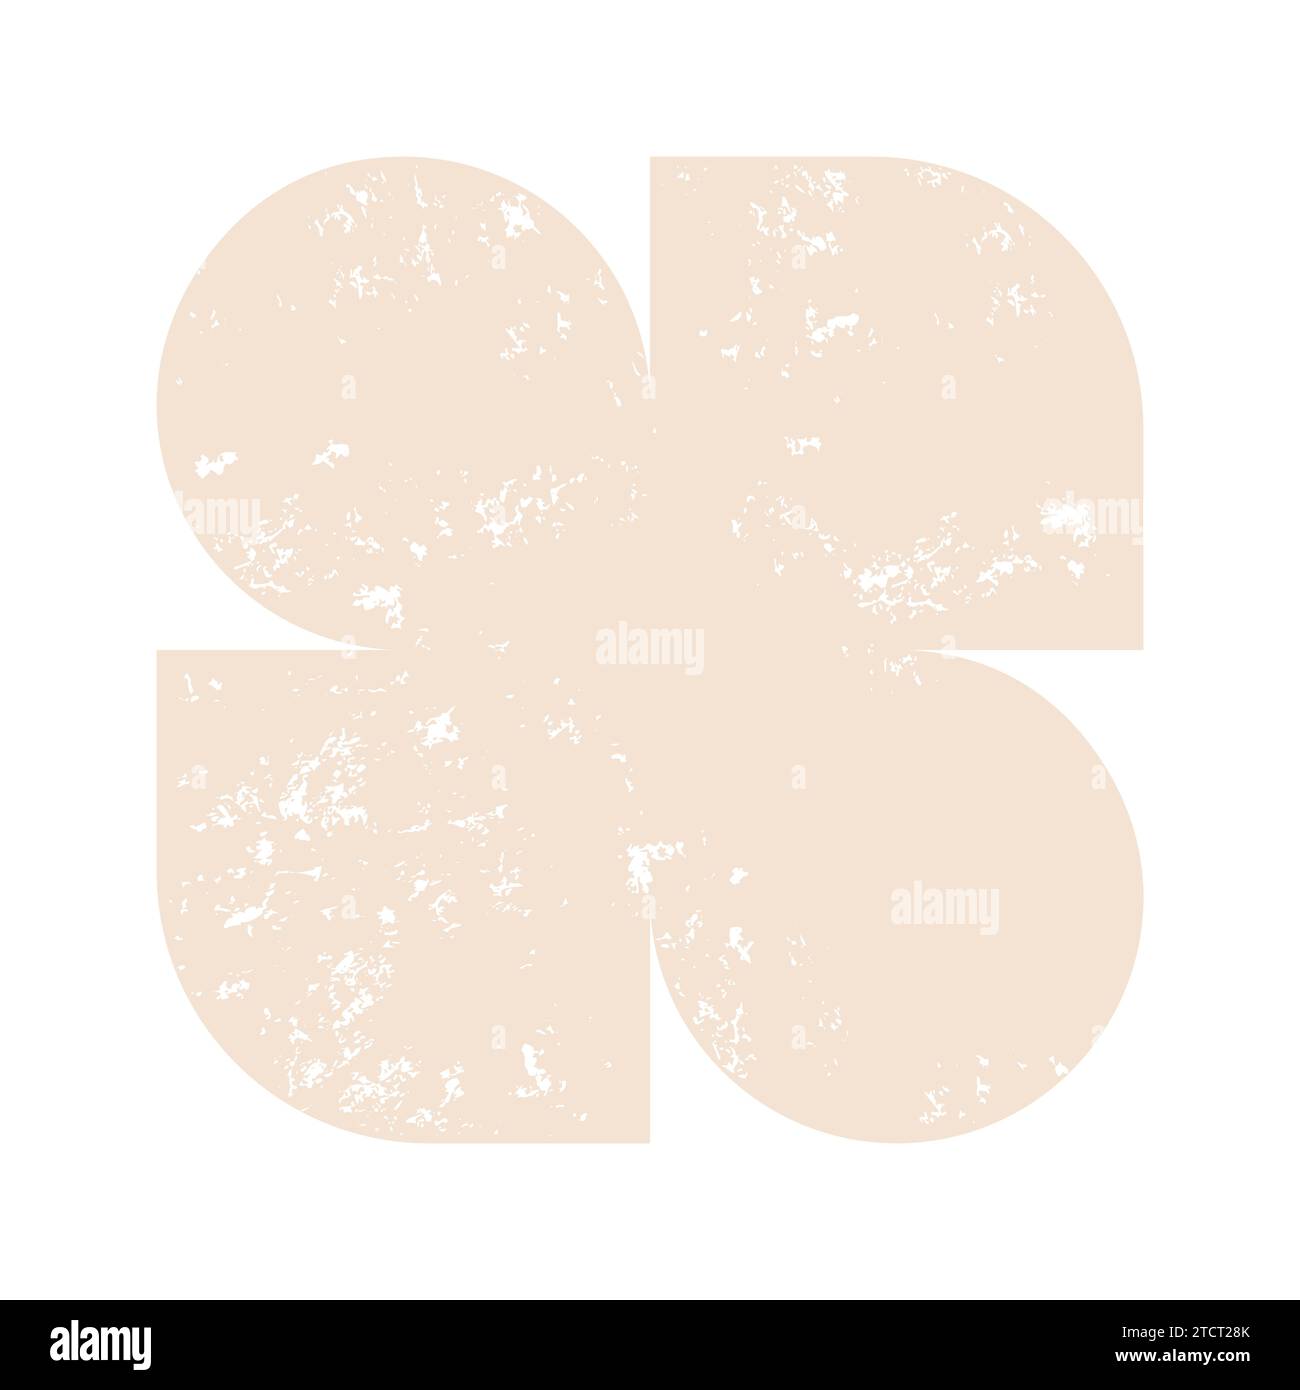 Cornice grunge bauhaus beige geometrica astratta per decorazione di pareti, cartolina, banner social media, sfondo del design della copertina della brochure. Modern Abstract Illustrazione Vettoriale